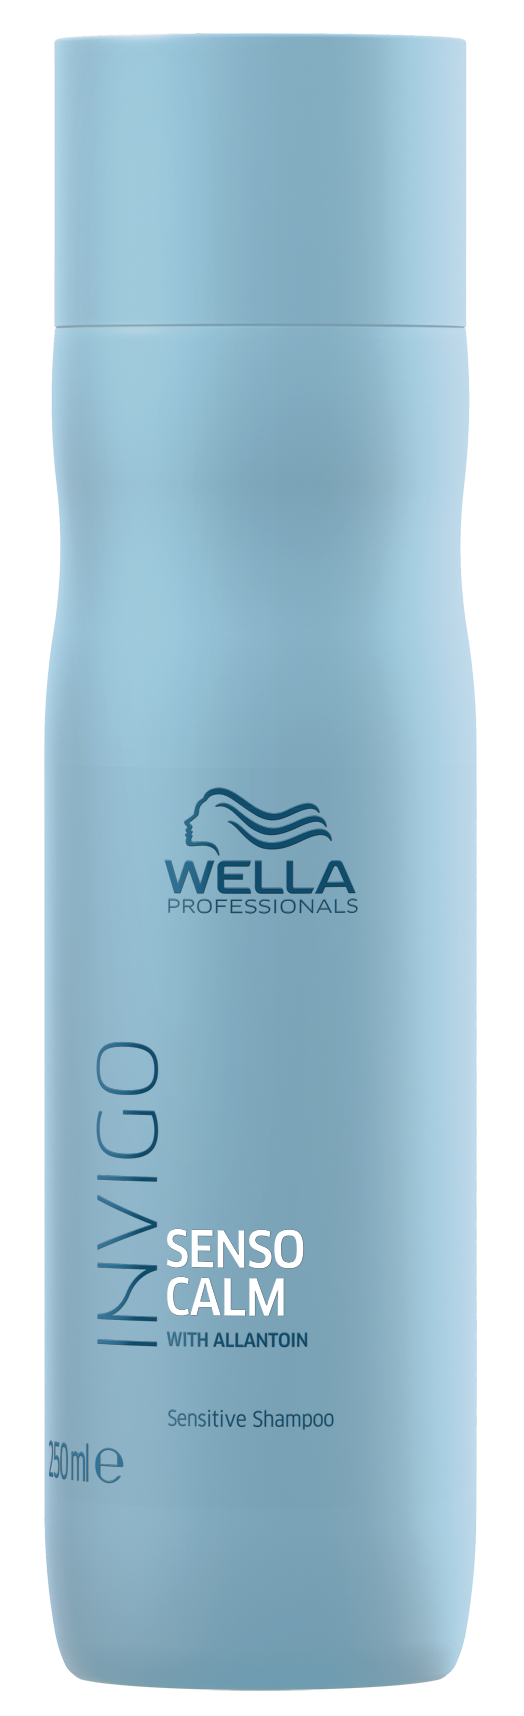 Шампунь Wella Professionals Для чувствительной кожи головы 250 мл wella professionals шампунь обновляющий elements 250 мл